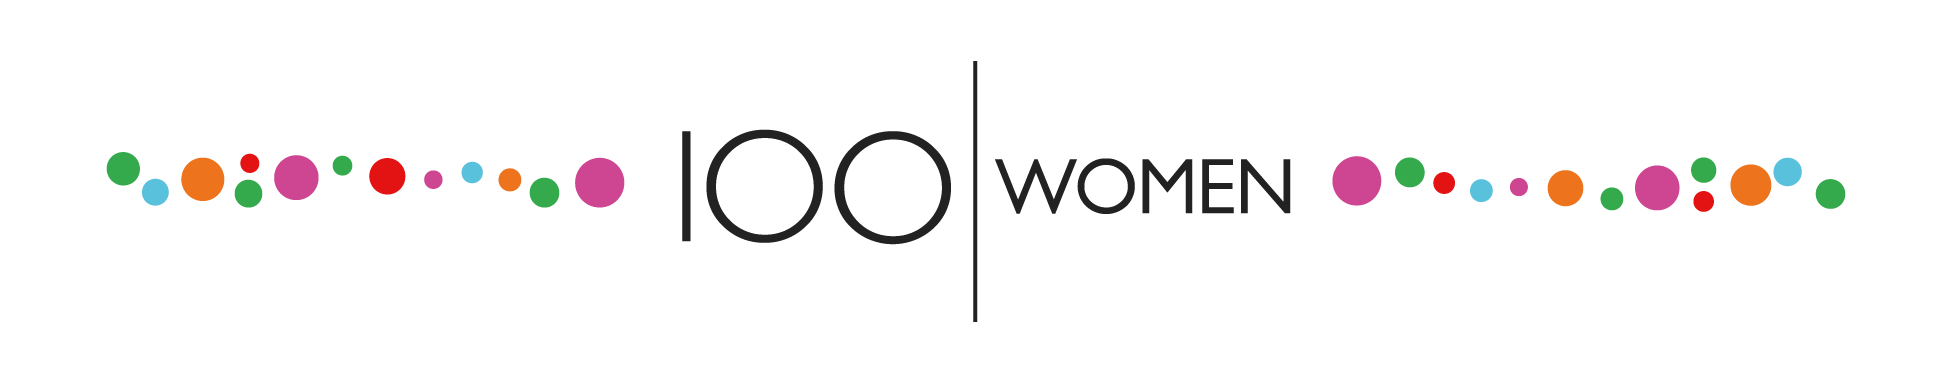 100 Qadın - BBC Dünya Xidməti